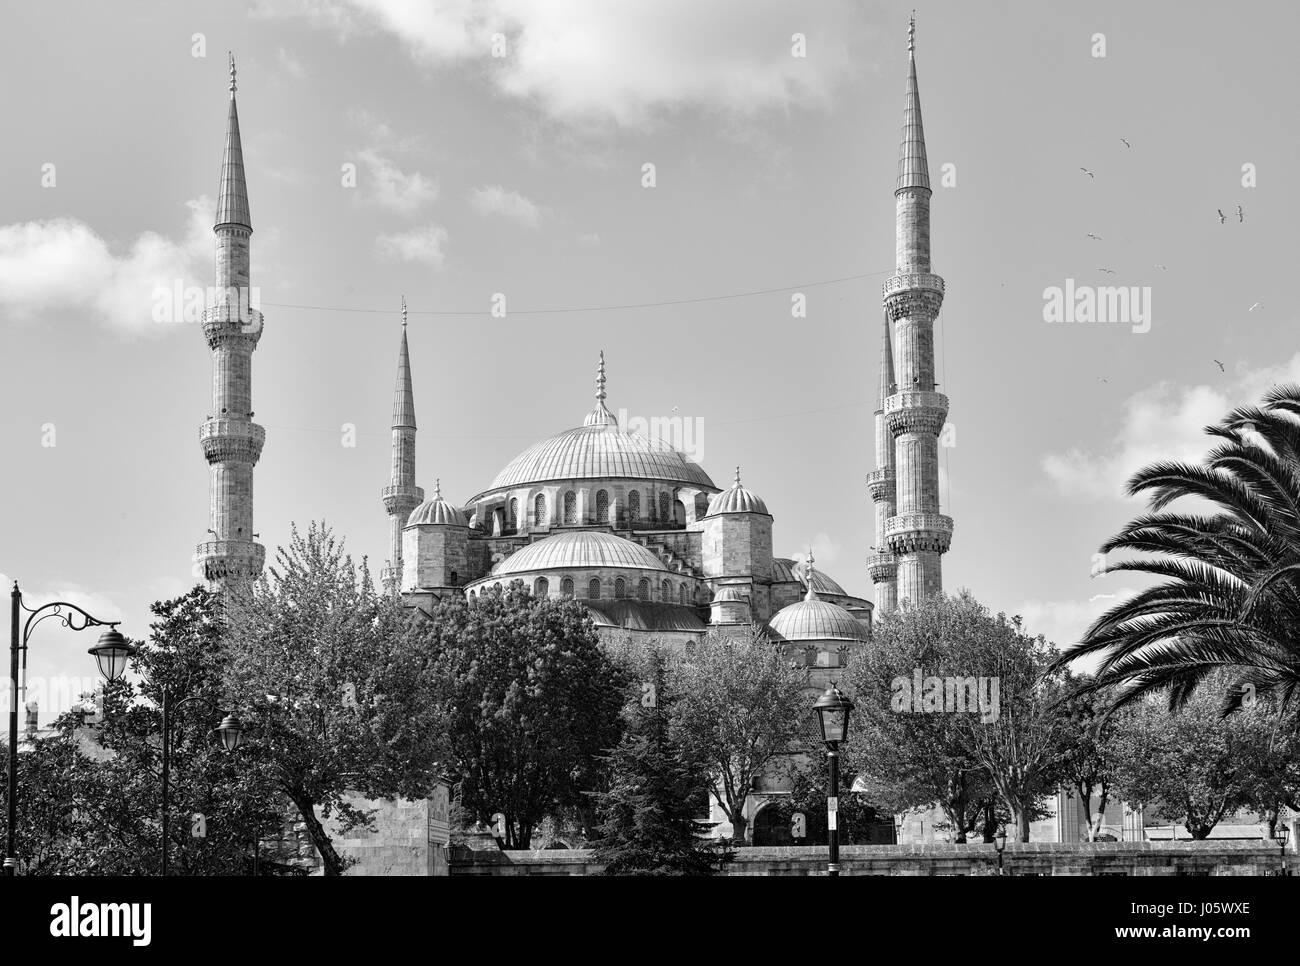 La Mosquée Sultan Ahmed ou Mosquée Sultan Ahmet est une mosquée historique situé à Istanbul, Turquie. Un site touristique populaire, la Mosquée Sultan Ahmed continue à fonctionner comme une mosquée aujourd'hui ; les hommes continuent à s'agenouiller en prière sur la Mosquée rouge luxuriant tapis après l'appel à la prière. La Mosquée Bleue, comme c'est généralement connu, a été construit entre 1609 et 1616 pendant le règne de Ahmed I. Son Külliye contient la tombe d'Ahmed, un madrasah et un hospice. Peint à la main magnifique carreaux bleus ornent les murs de l'intérieur de la mosquée, et la nuit, la mosquée est baigné de lumières bleu comme la mosquée du châssis principal de cinq dômes, s Banque D'Images